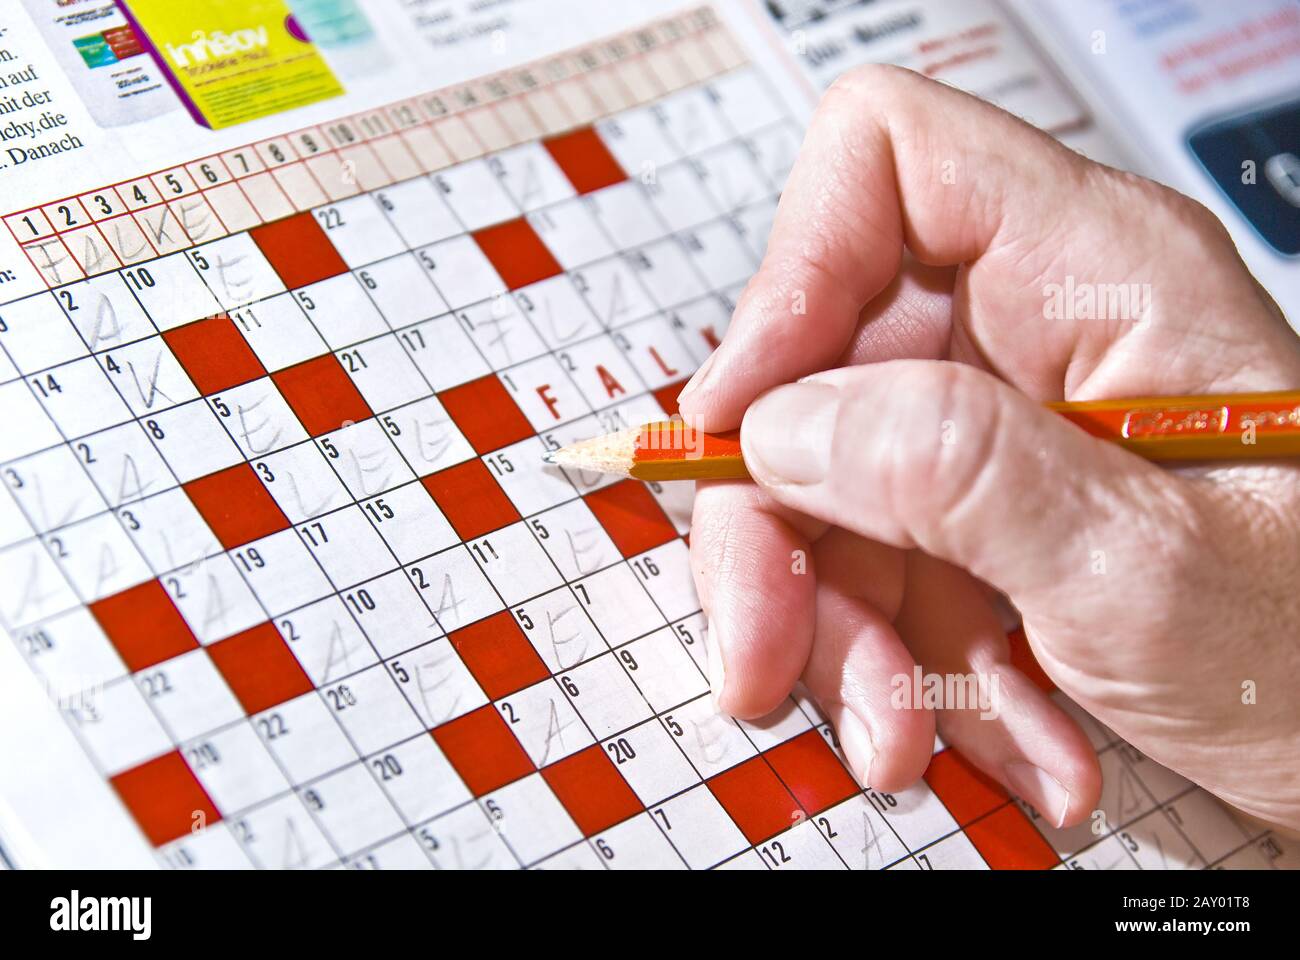 crossword puzzles Stock Photo